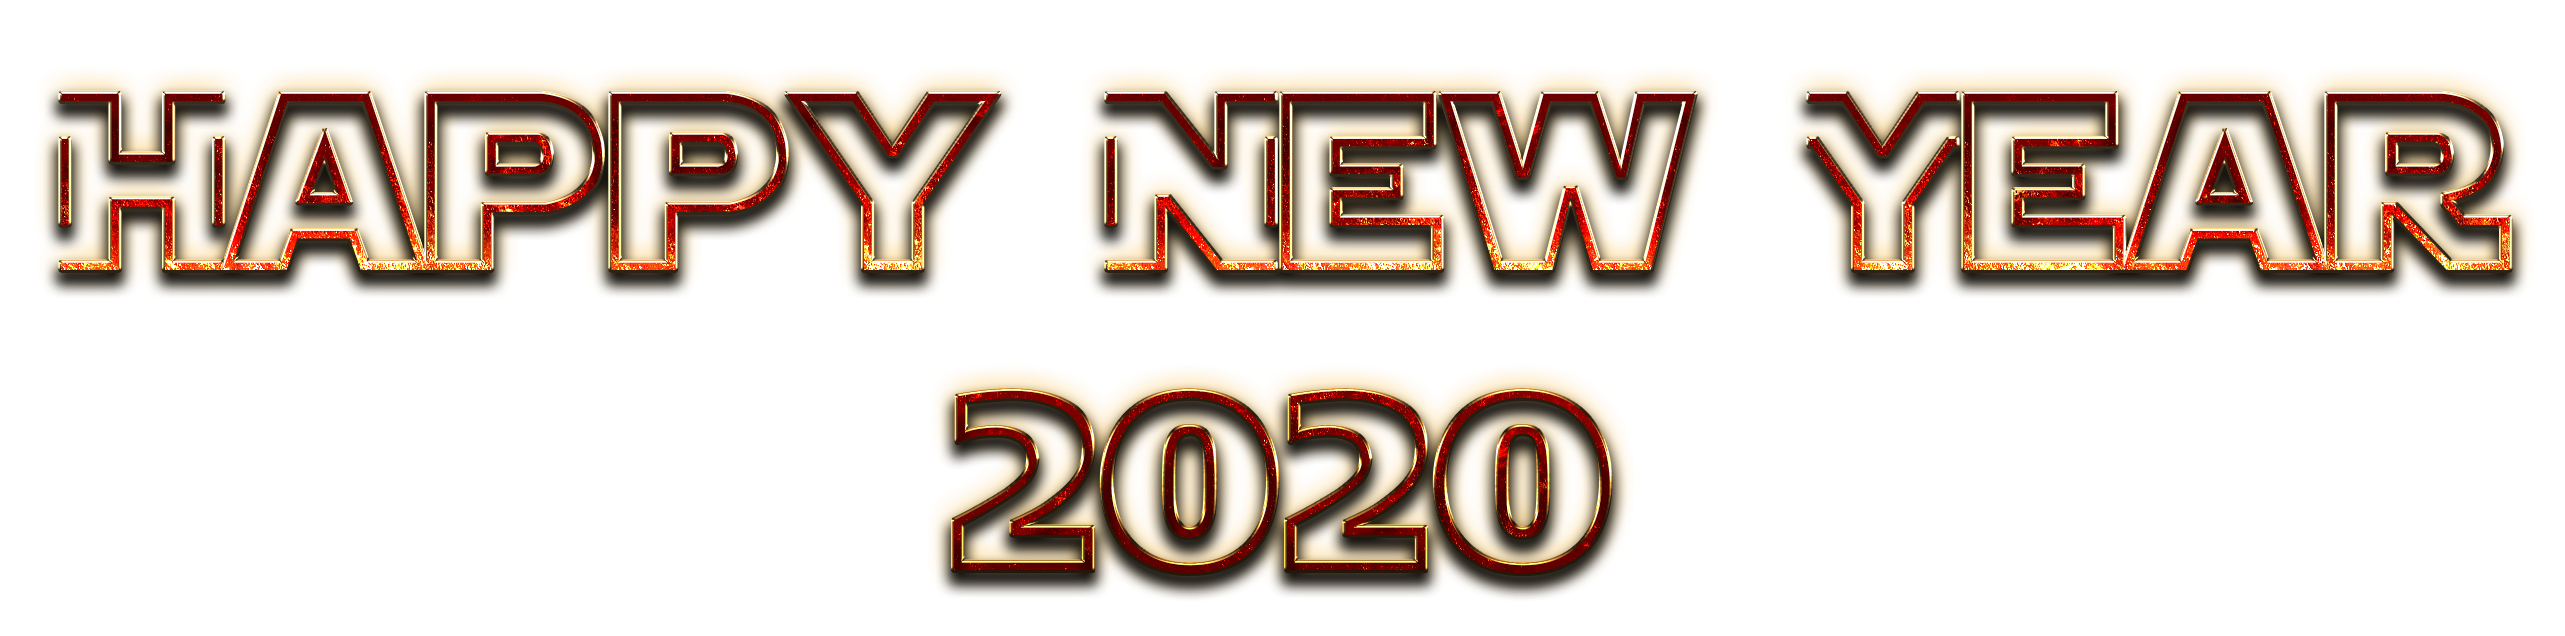 Năm mới 2020 và Năm mới Hạnh phúc